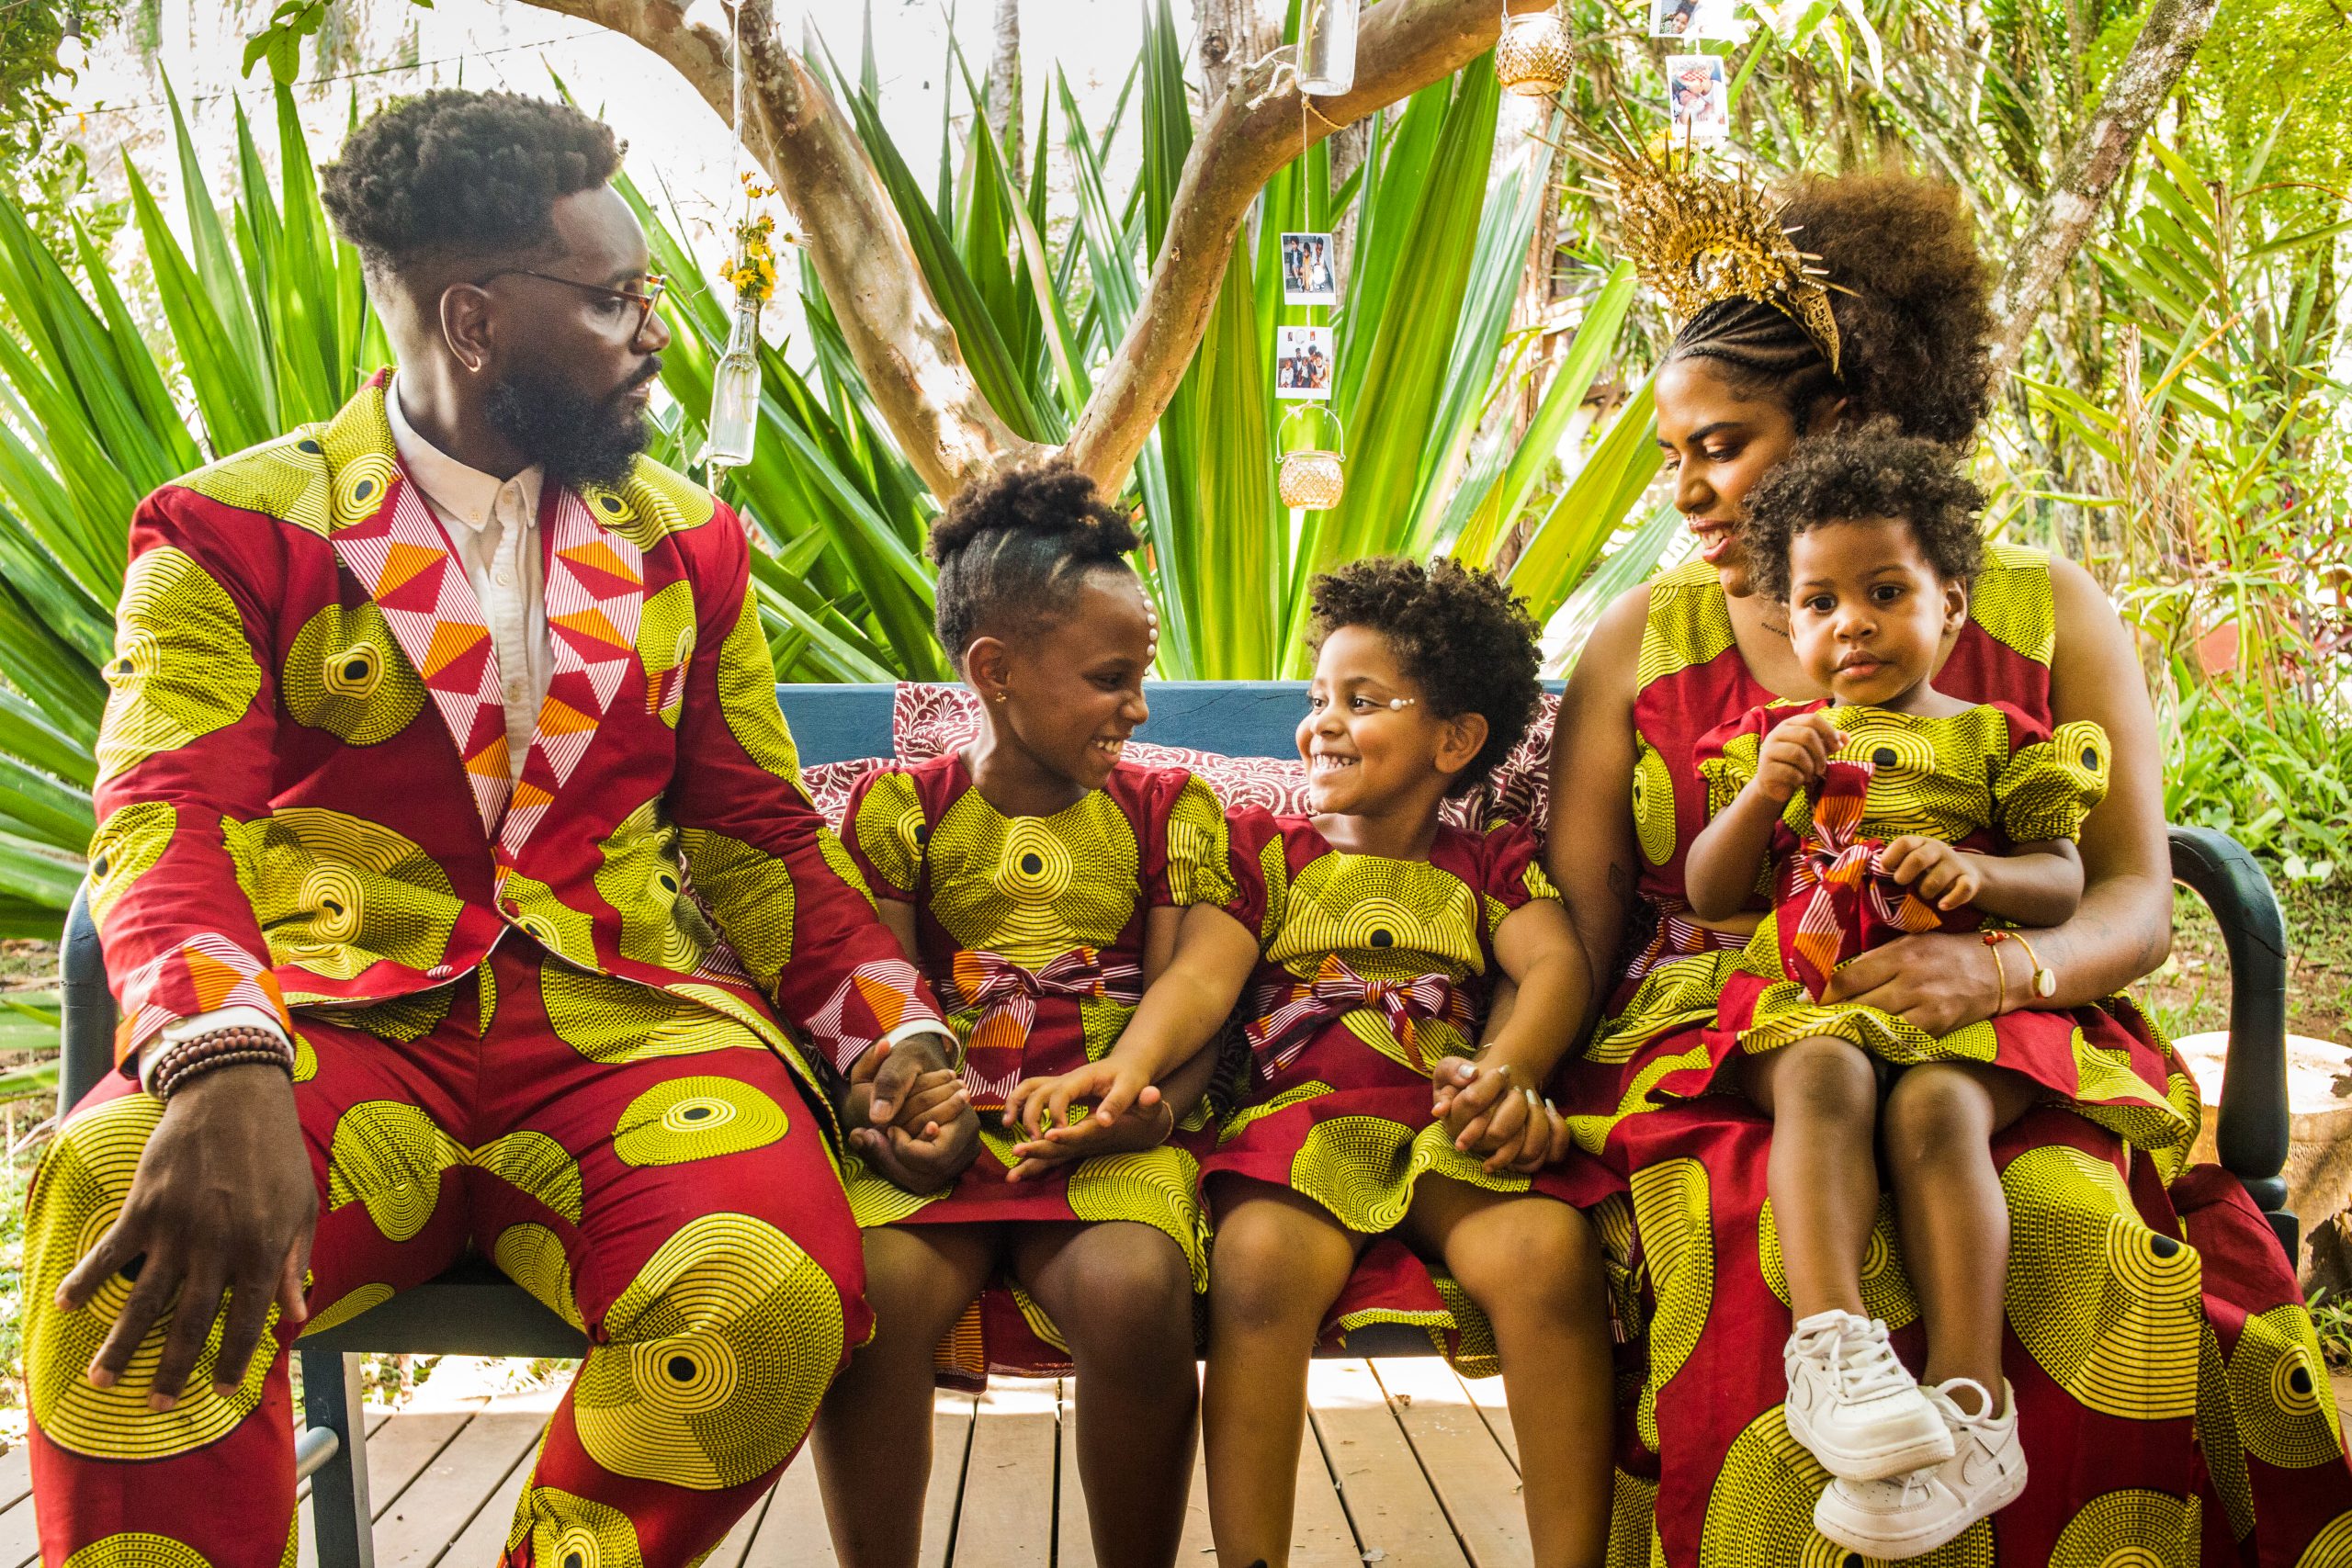 Uma família com três filhas. Os adultos e as crianças vestem a mesma estampa em vermelho e amarelo. Todos são negros